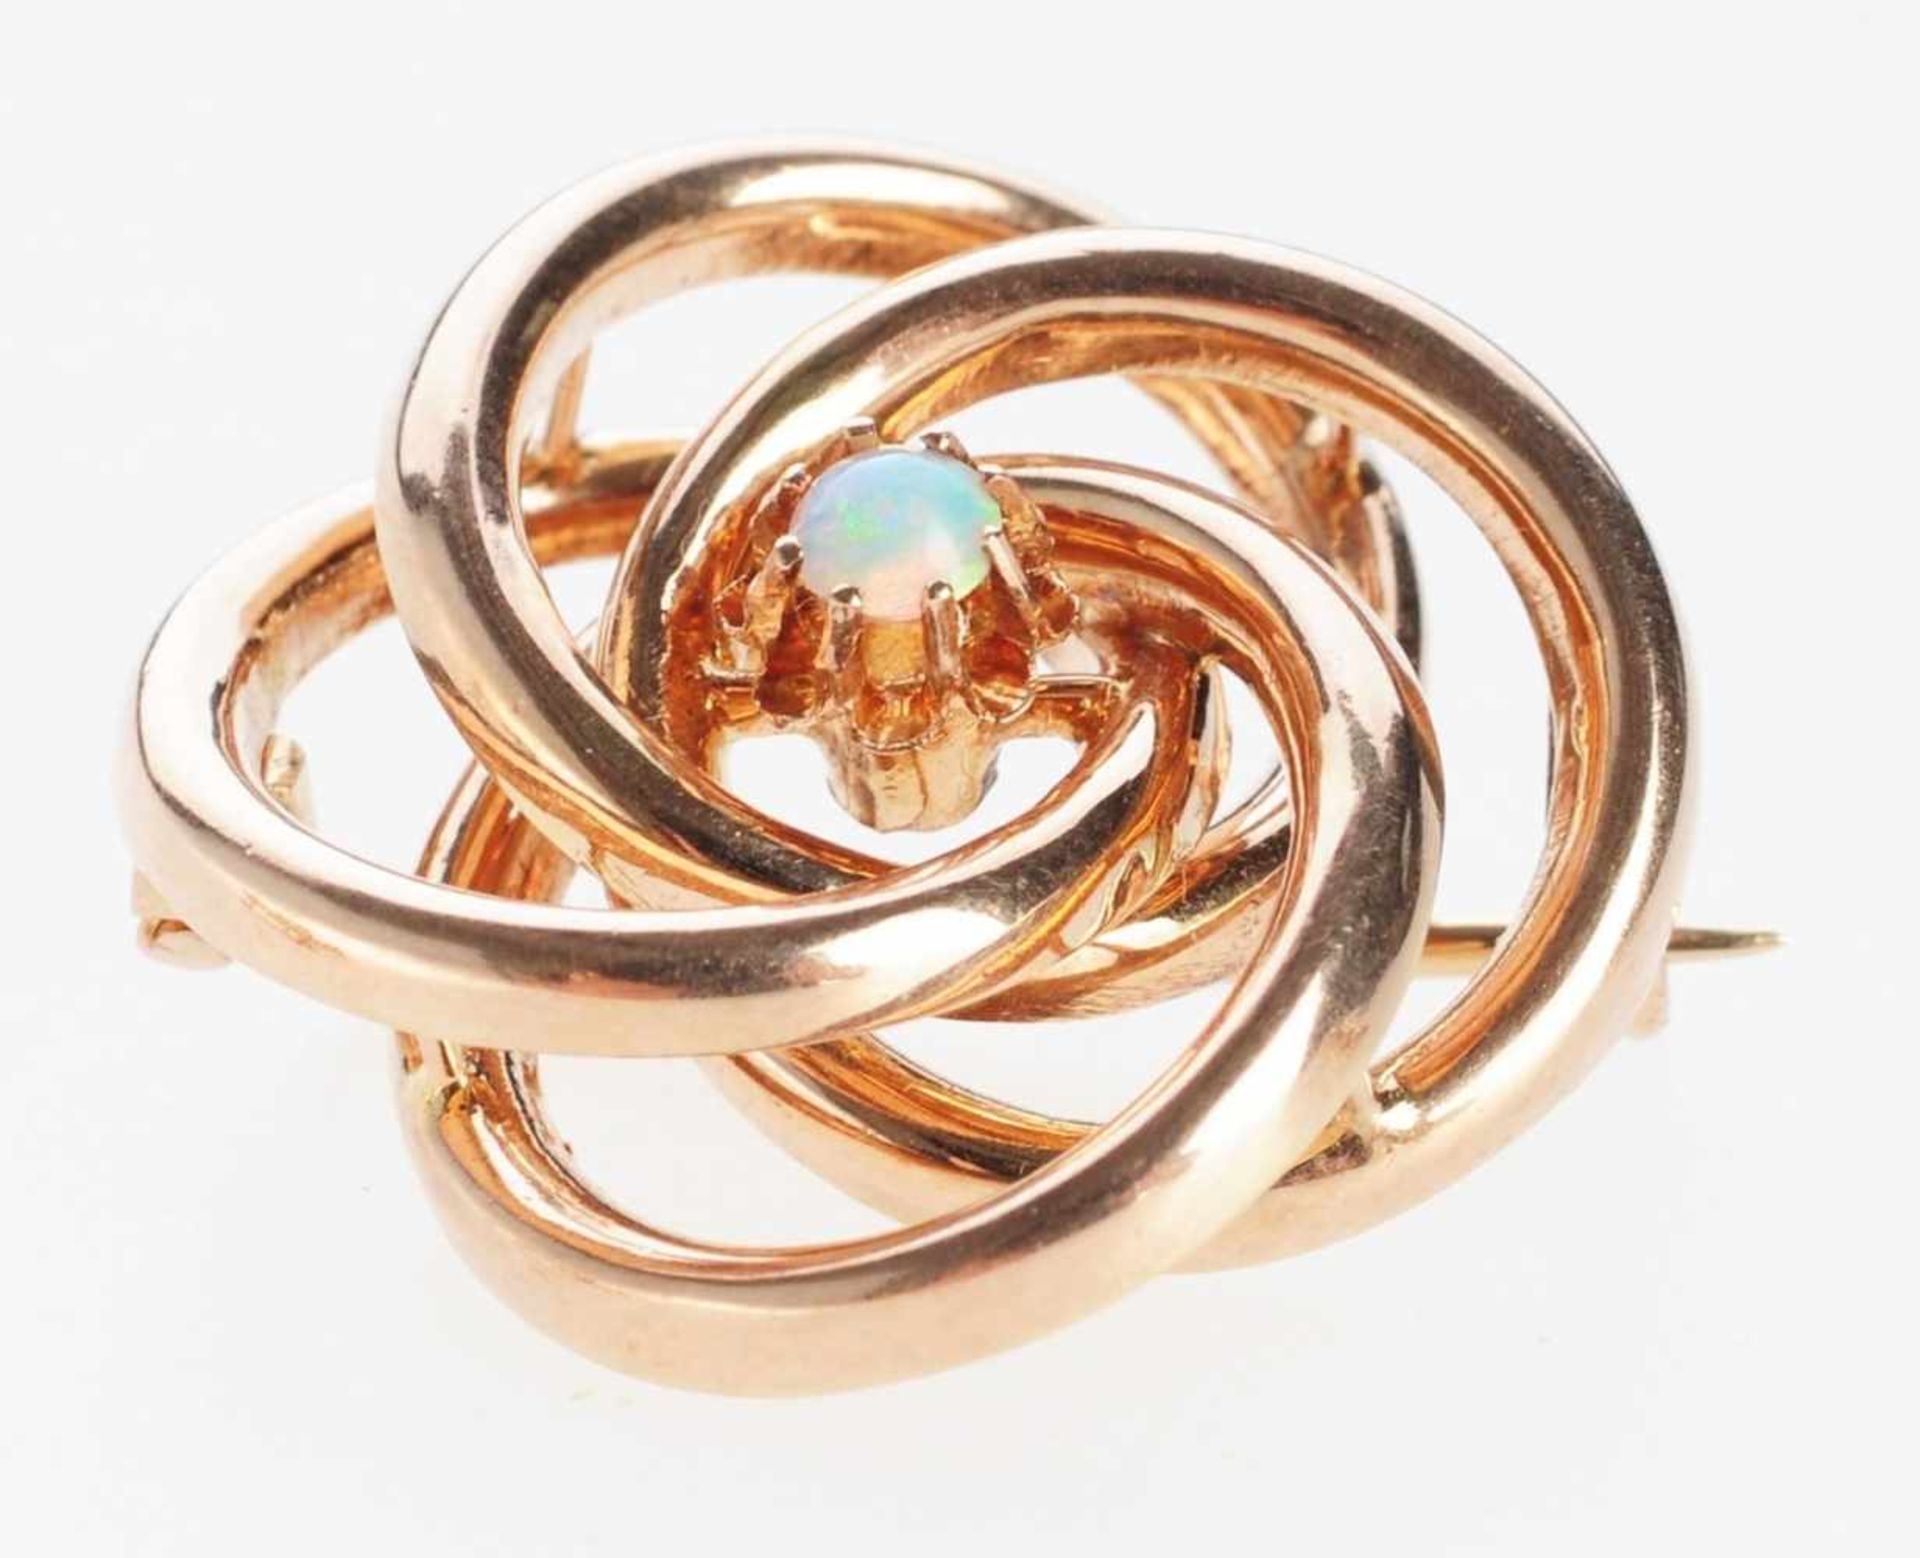 Opal-Brosche 585er Roségold. Form aus 4 ineinander gesteckten Ringen. Mittig kleine Blüte mit Opal-